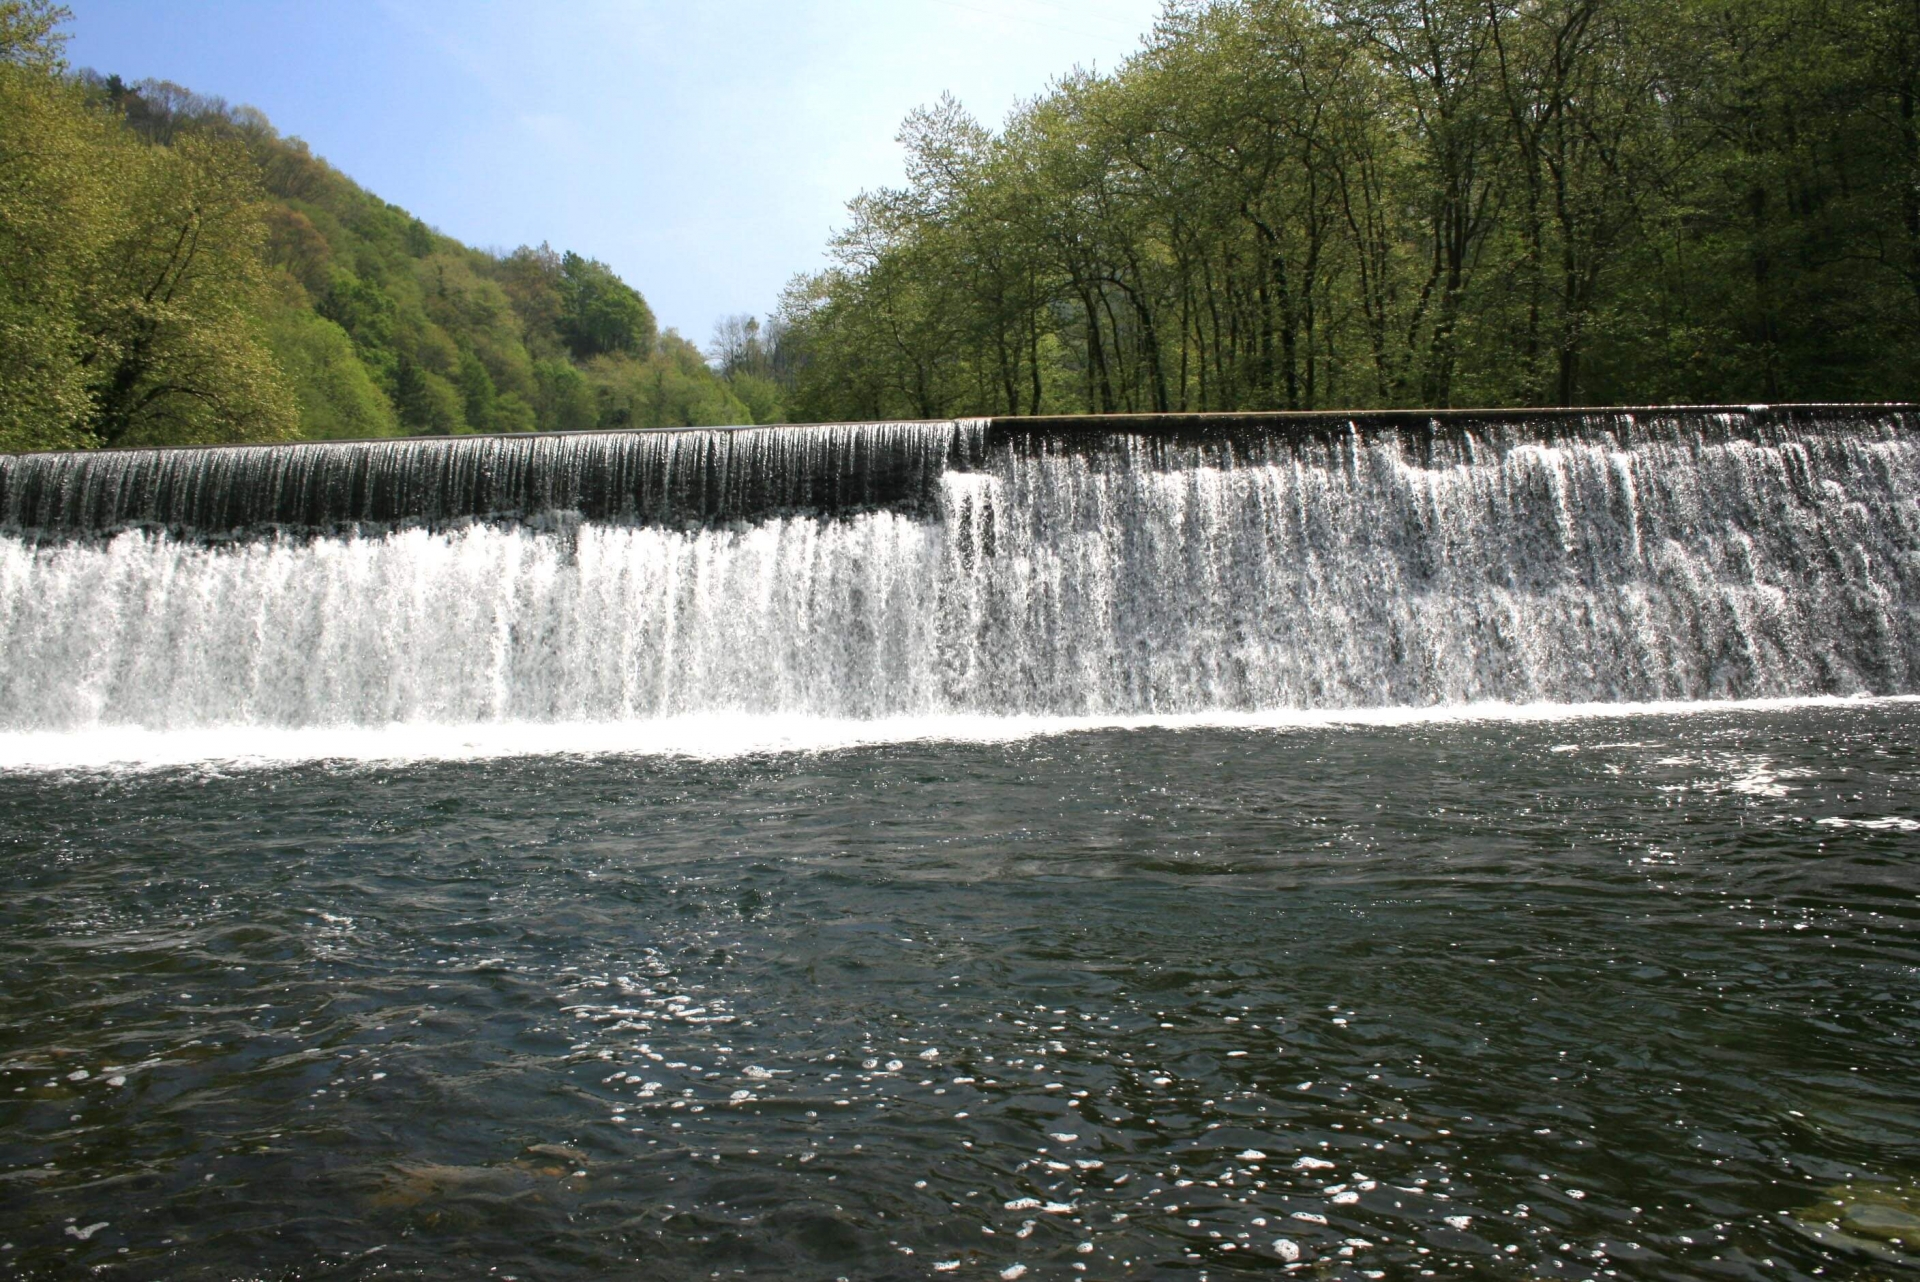 Central Hidroeléctrica río Urumea